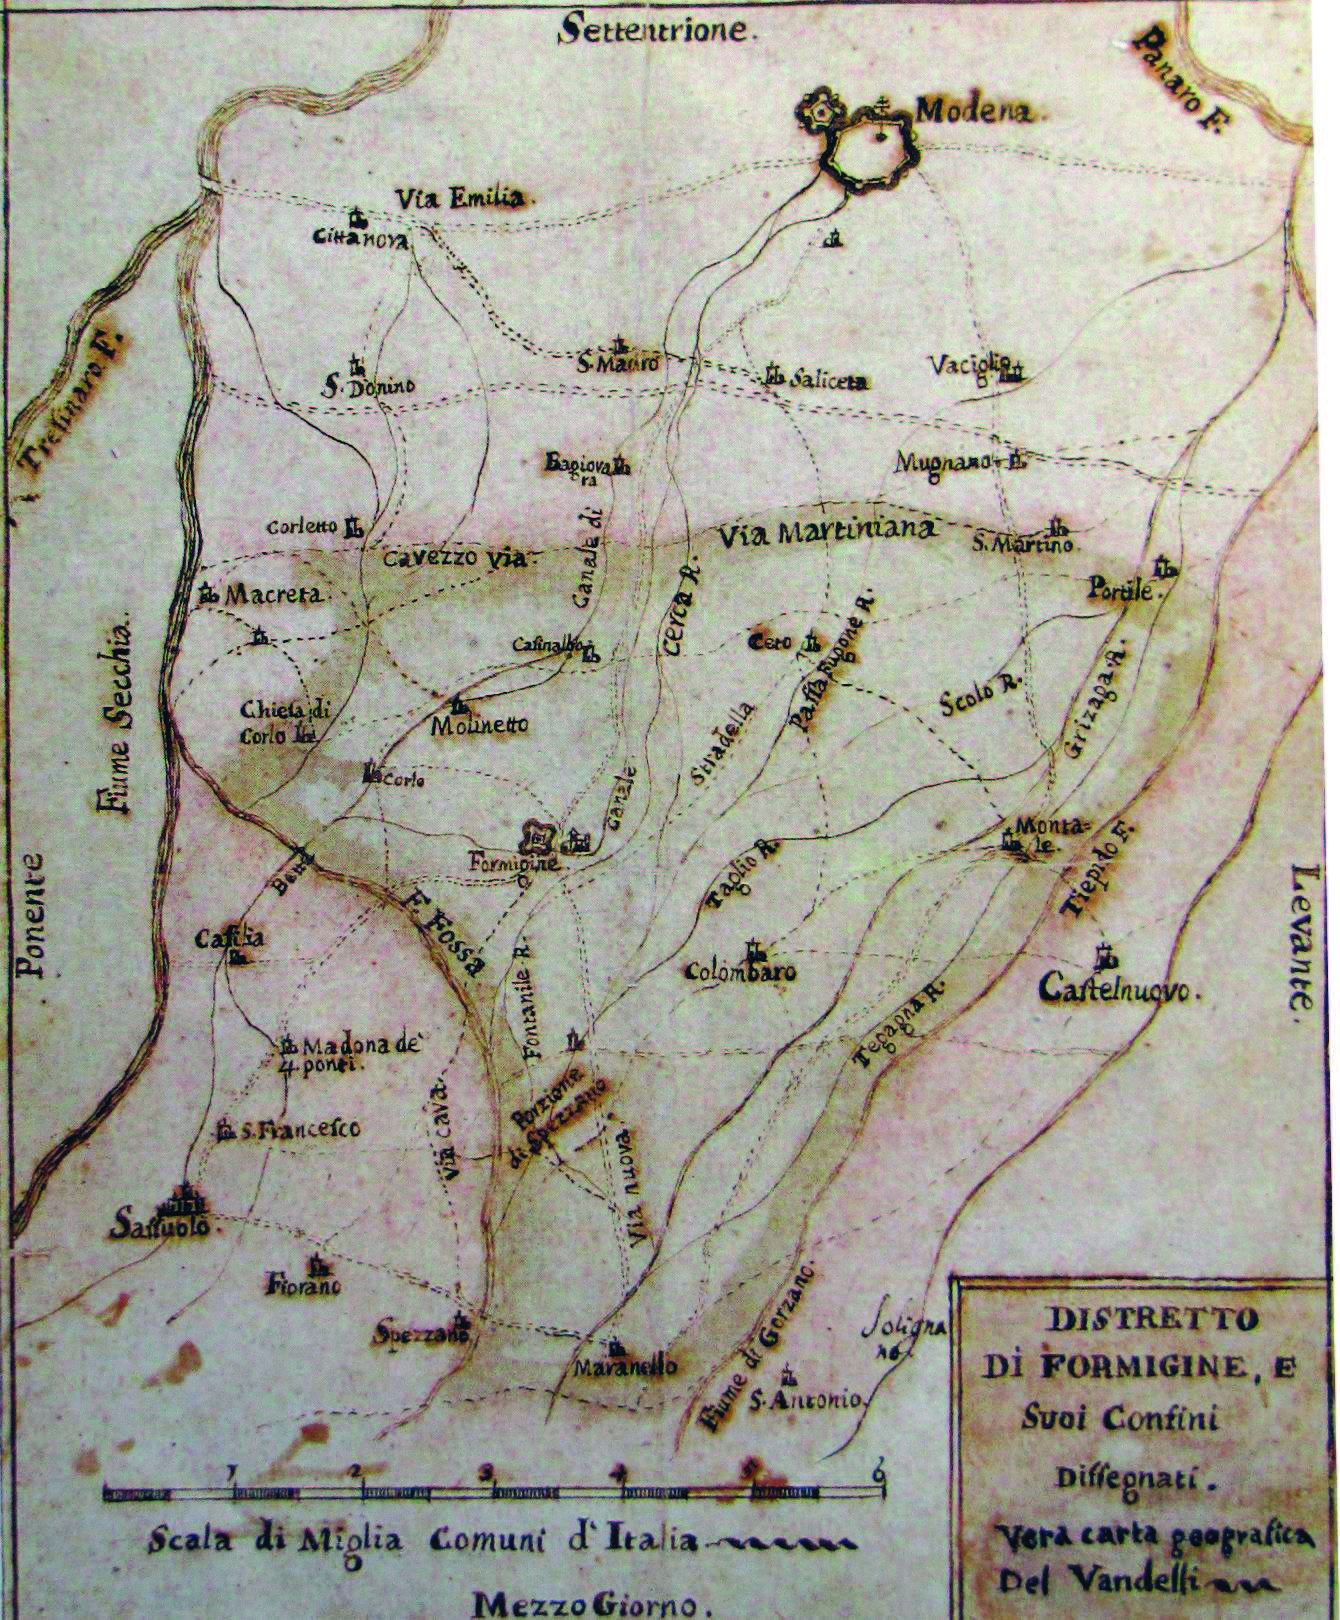 Figura 9: il territorio di Formigine in una mappa del XVIII secolo del cartografo ducale Ing. Vandelli. Da TACCHINI, VANDELLI 1990, p. 34.